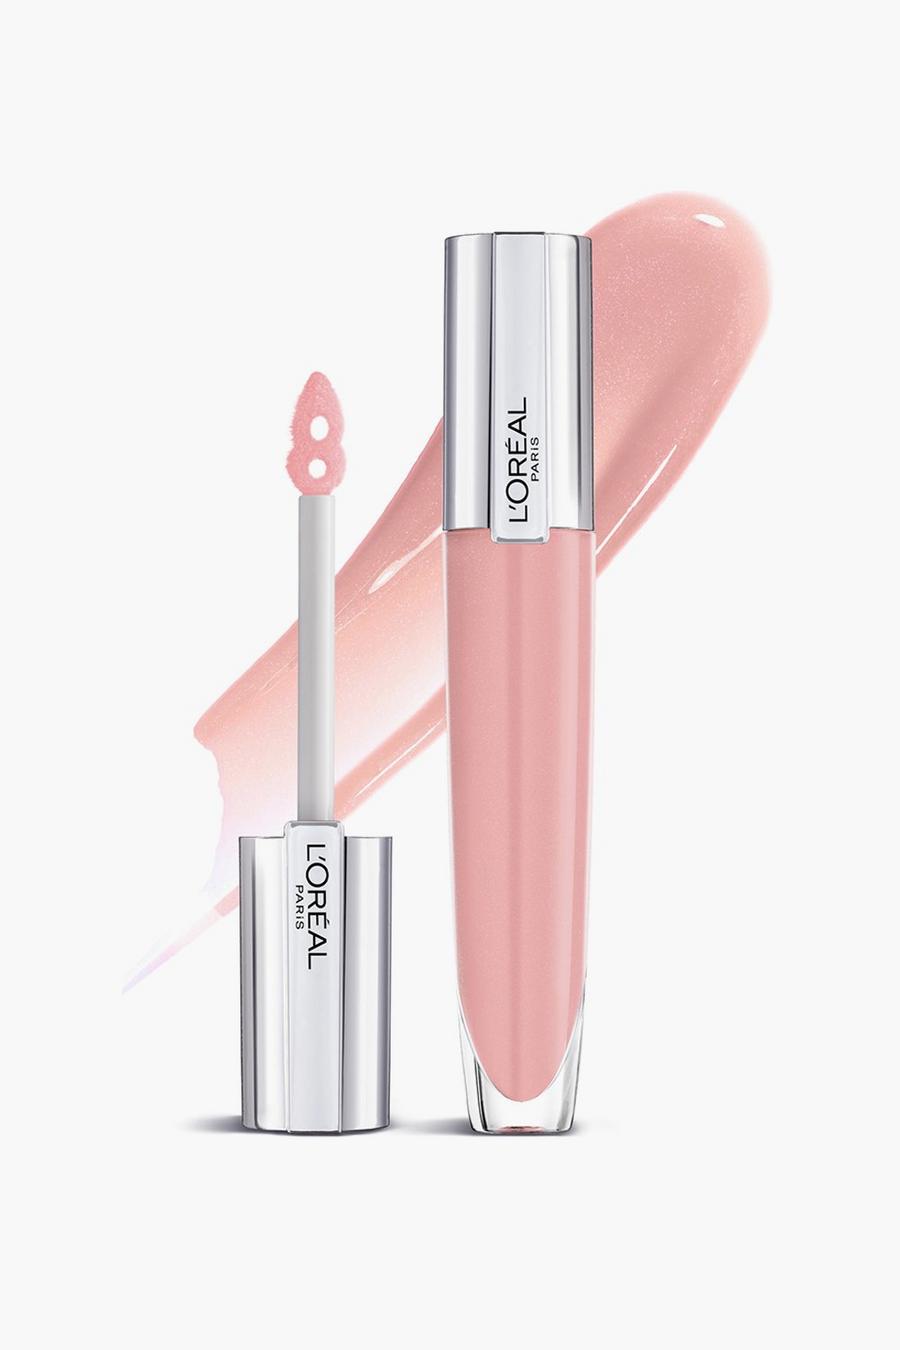 L'Oréal Paris - Gloss repulpant - Soar, Pink rosa